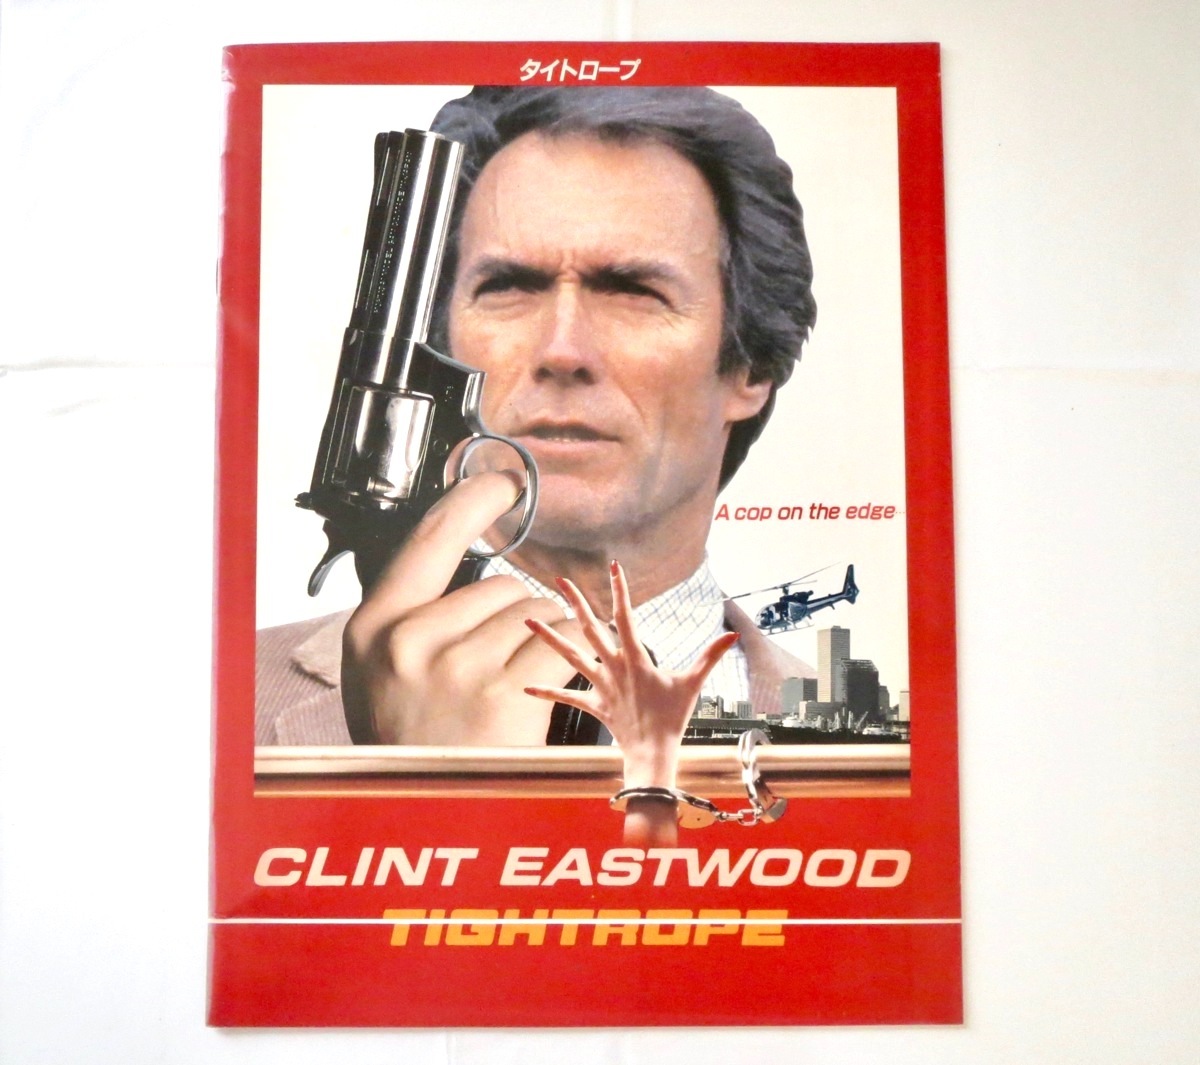 映画パンフレット タイトロープ 1984年公開 アメリカ作品 クリント イーストウッド リチャード タッグル 殺人事件 刑事 サスペンス